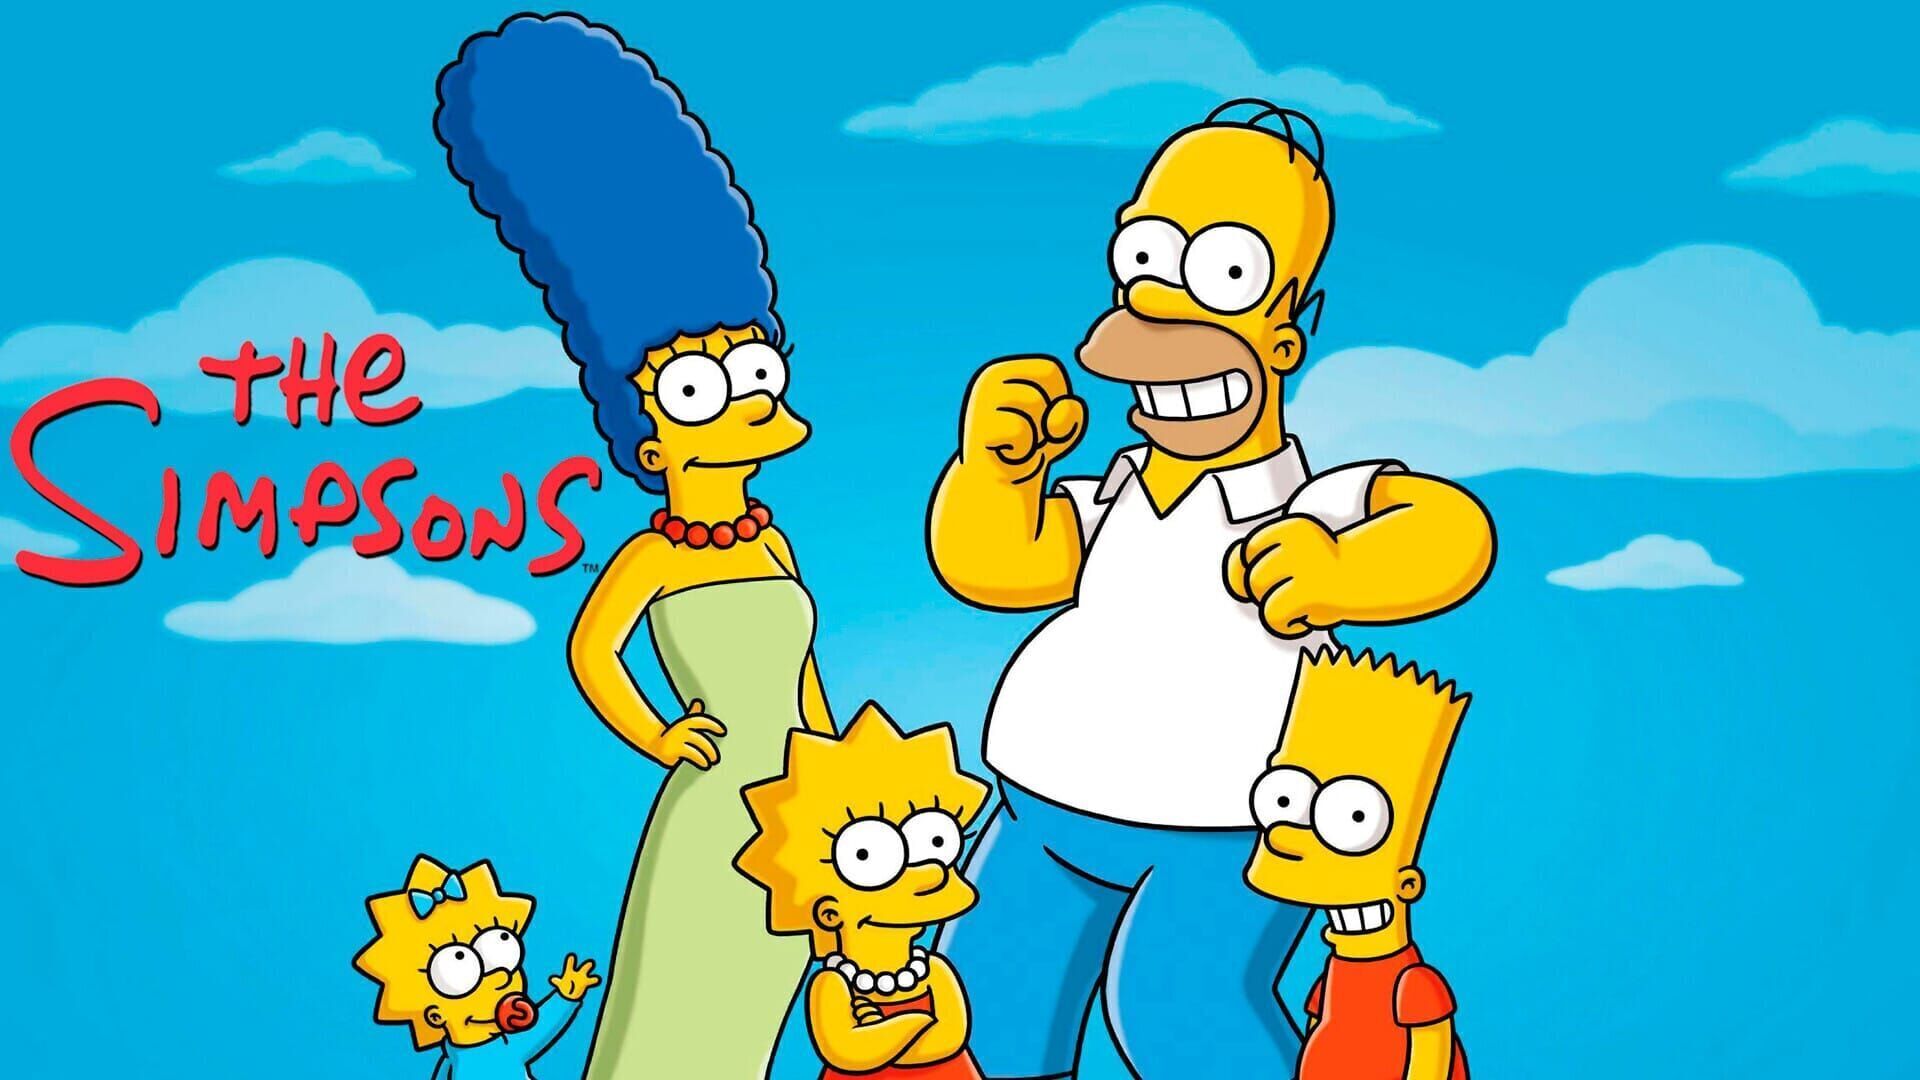 Les Simpson Saison 8